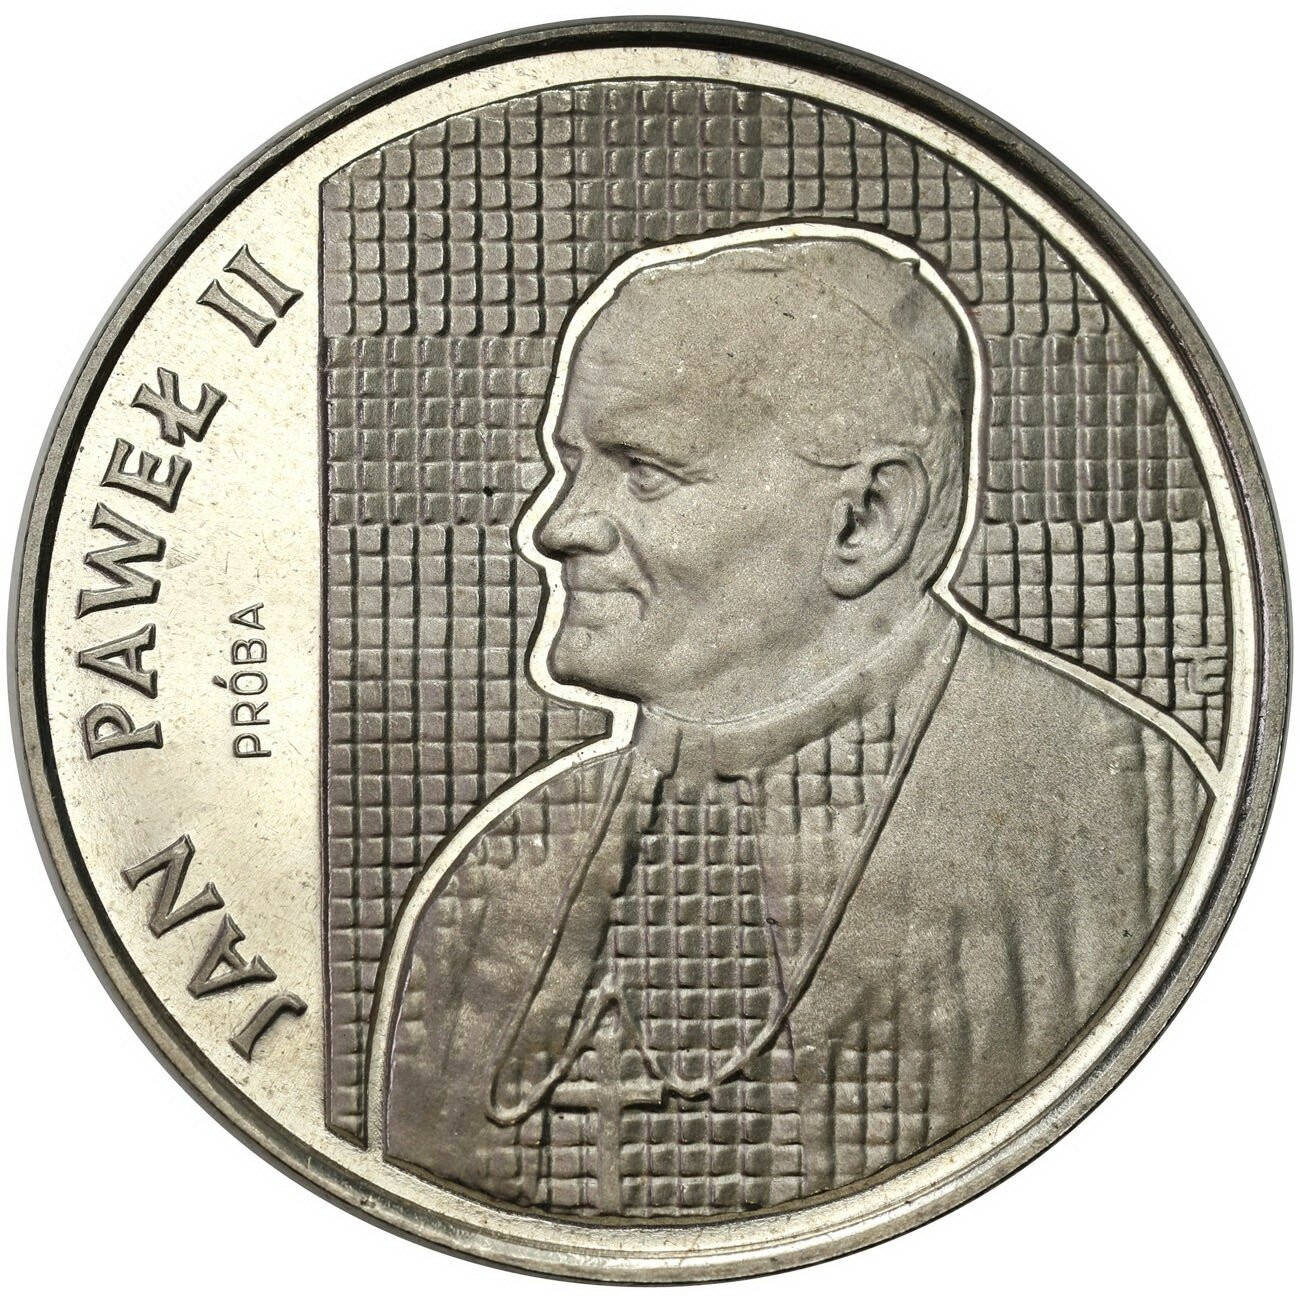 PRÓBA Nikiel 10.000 złotych 1989 Jan Paweł II